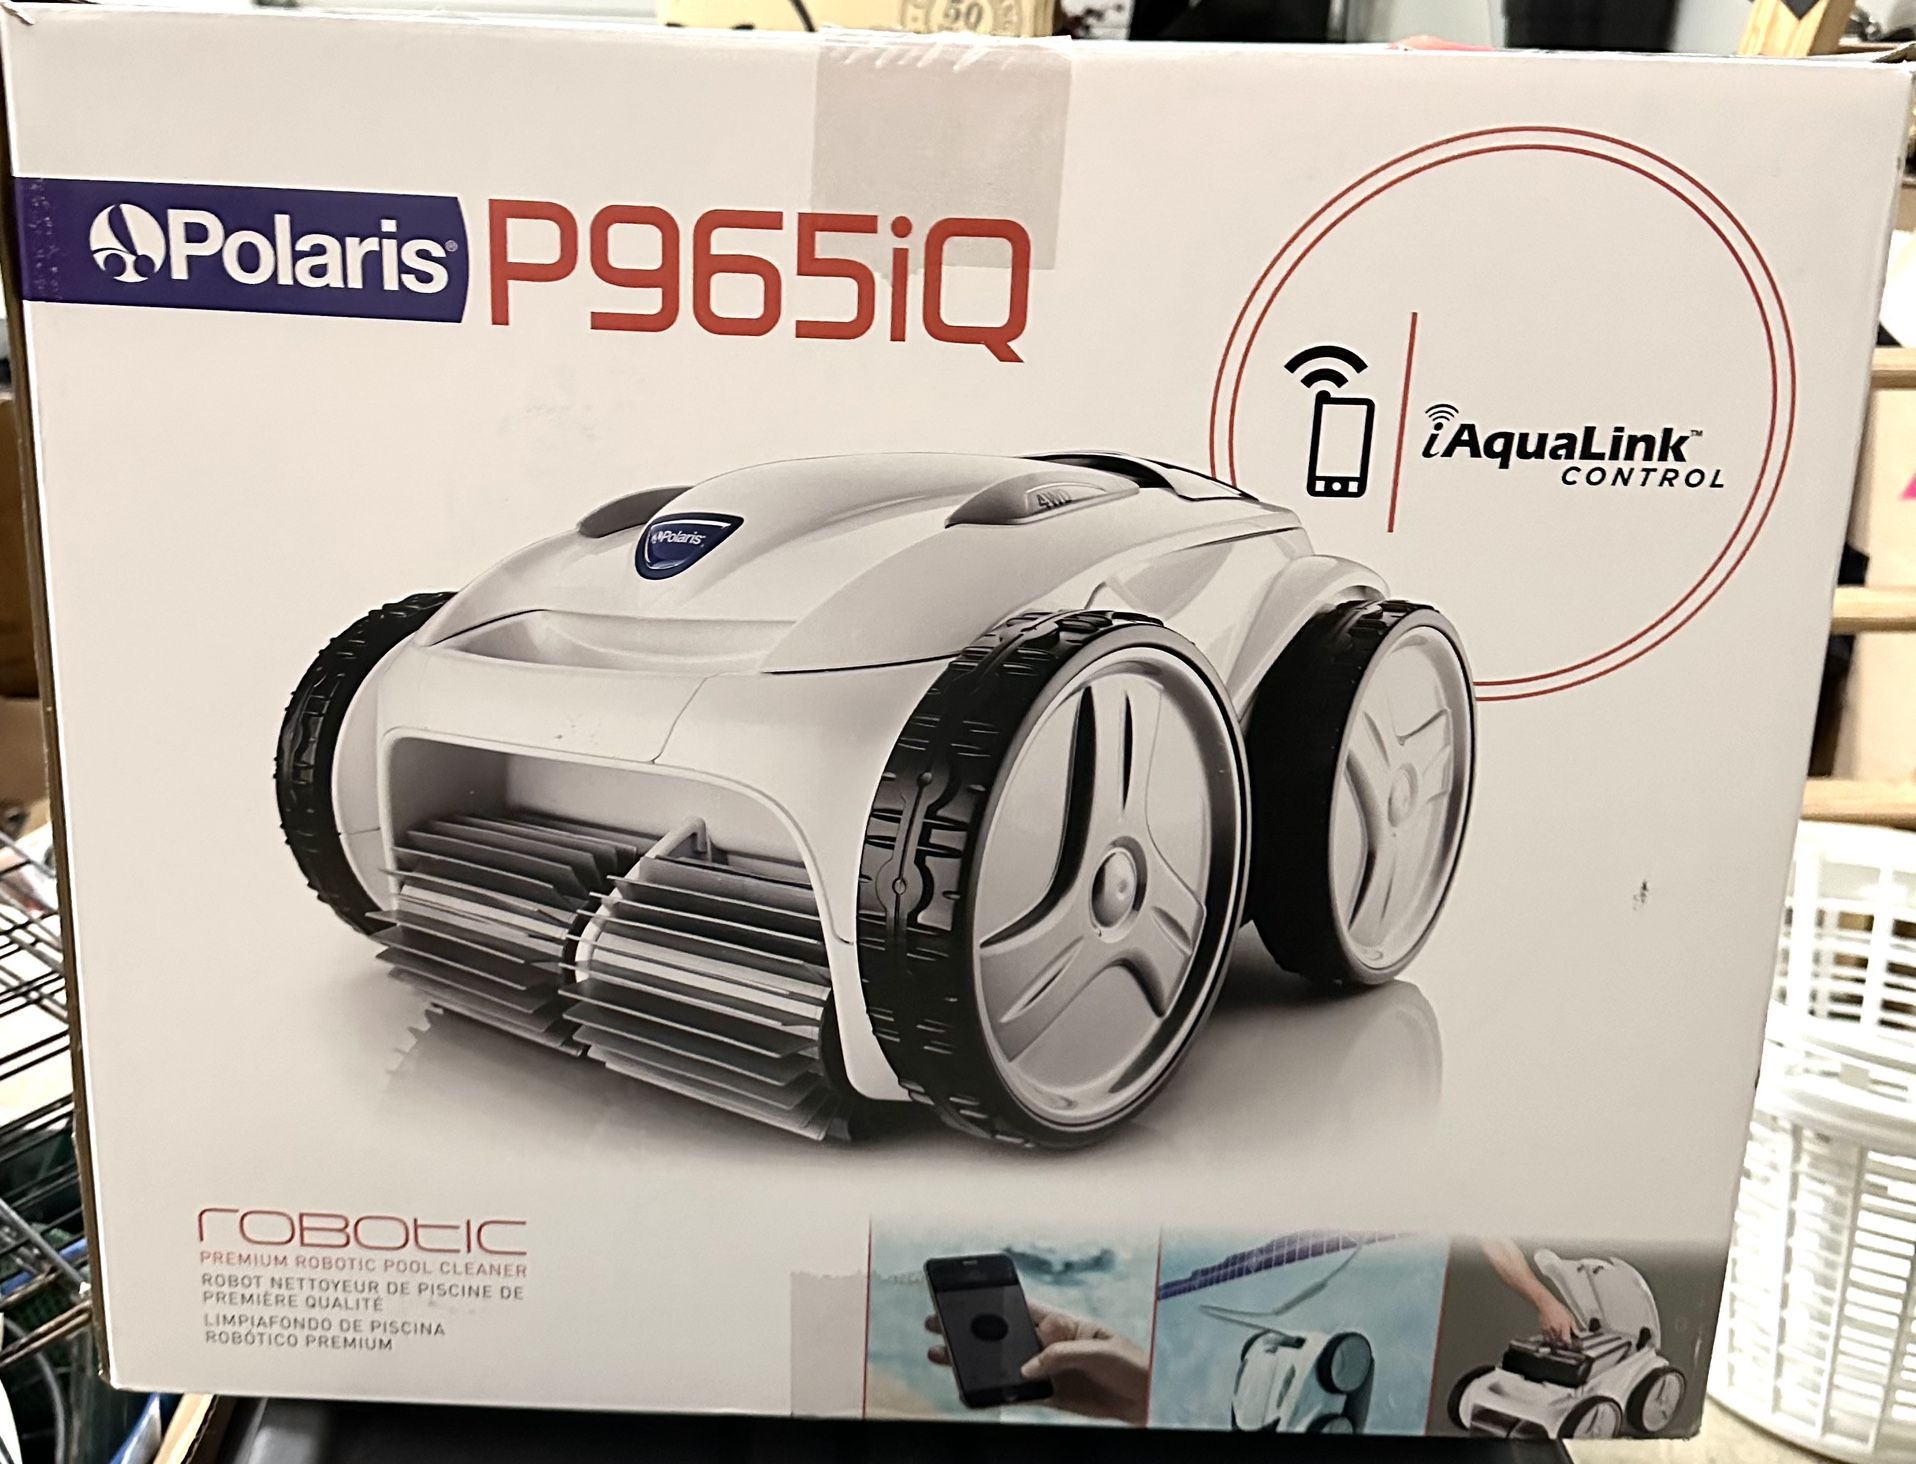 Polaris Robotic Pool Cleaner